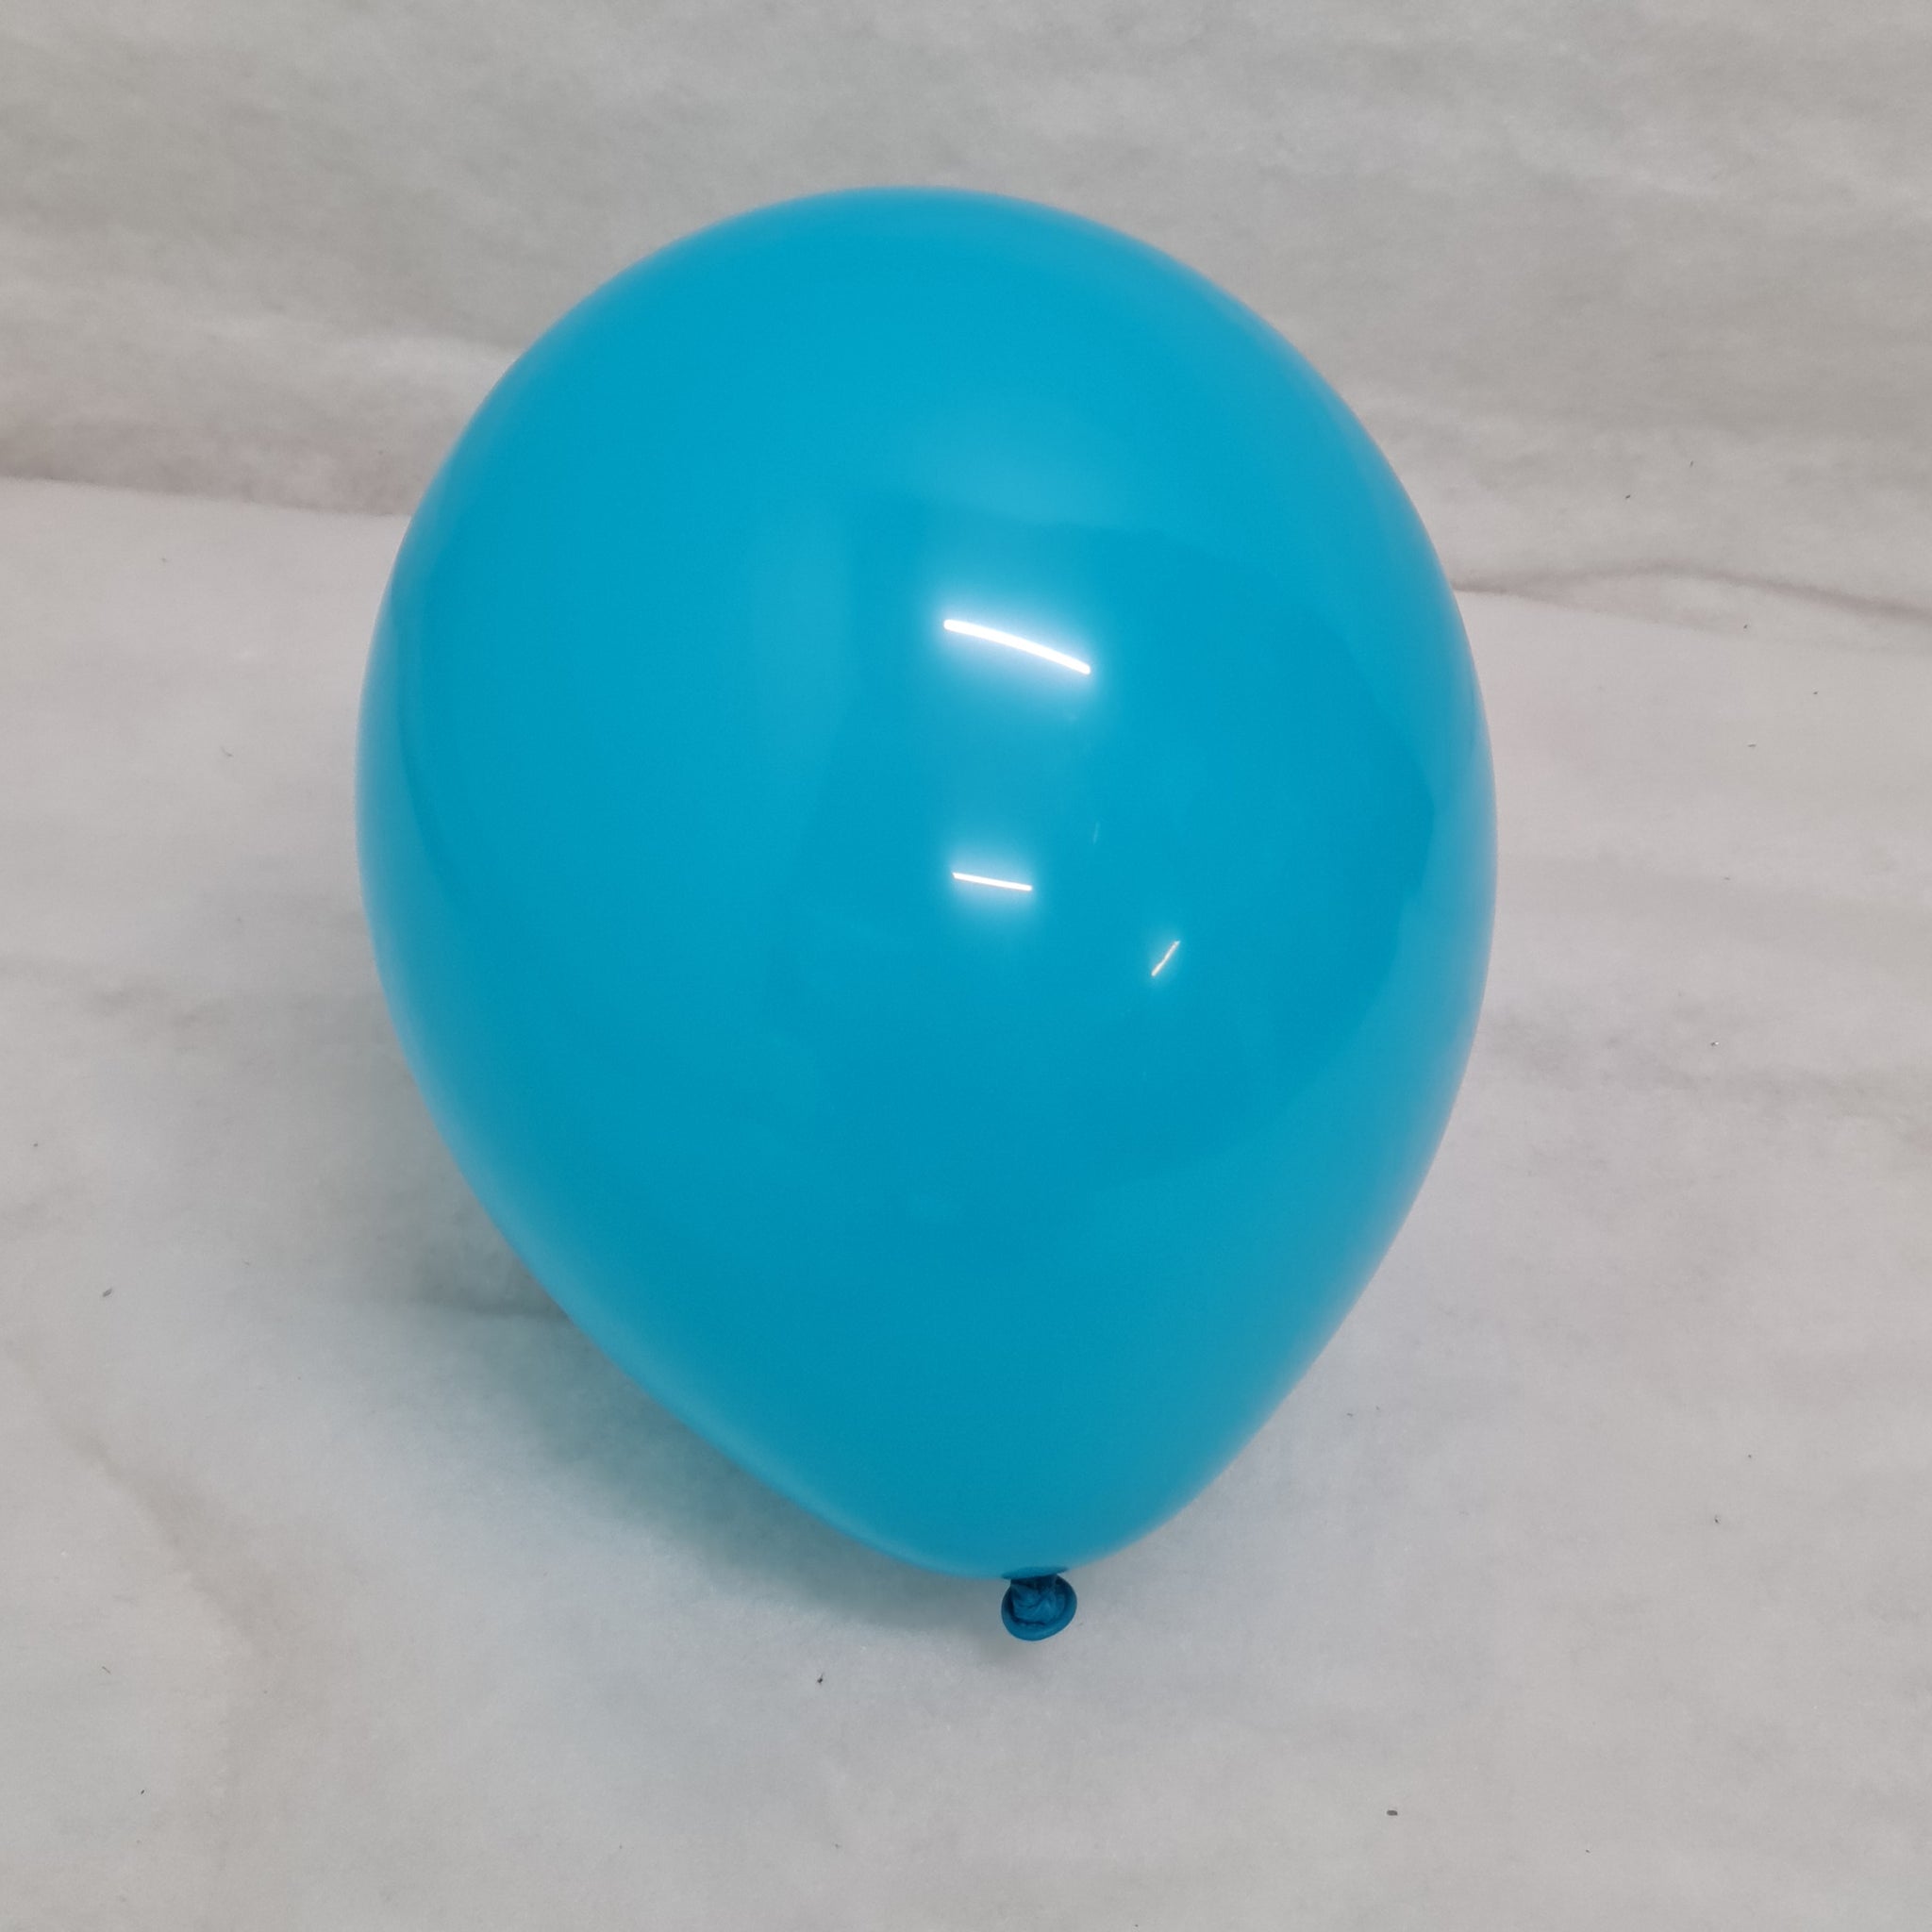 Turquoise Balloons - E99 Bag of 50 Eire Pastel Balloons